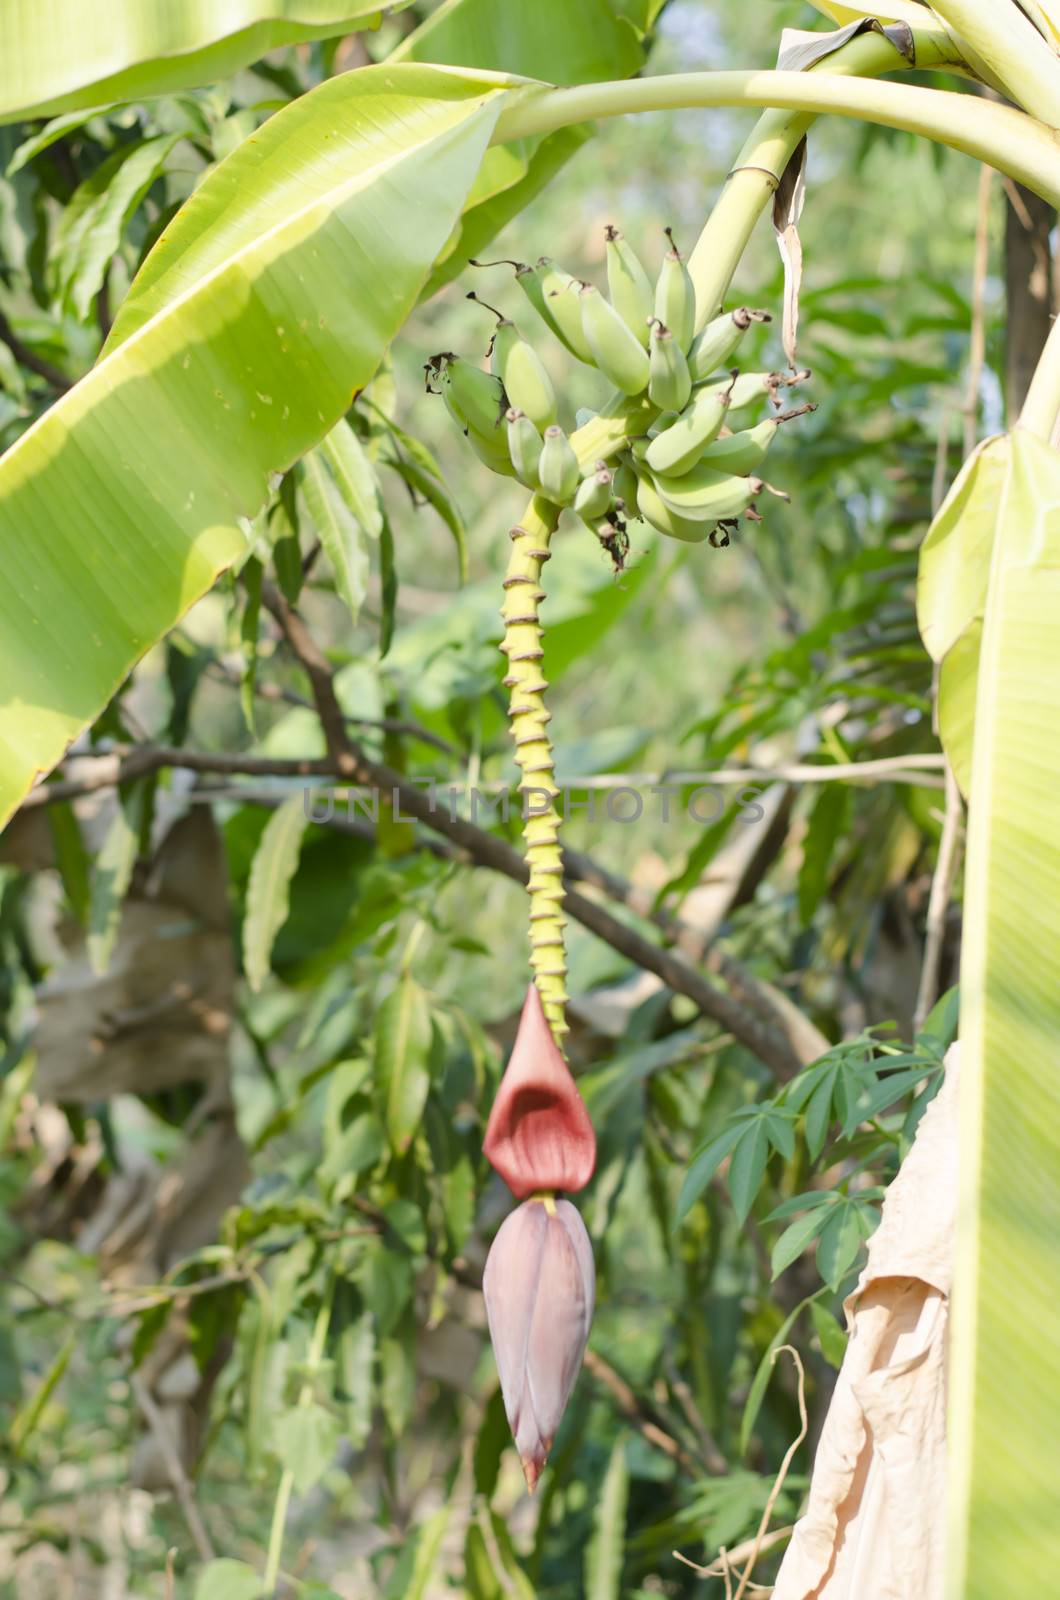 Banana Bud on banana tree by ammza12